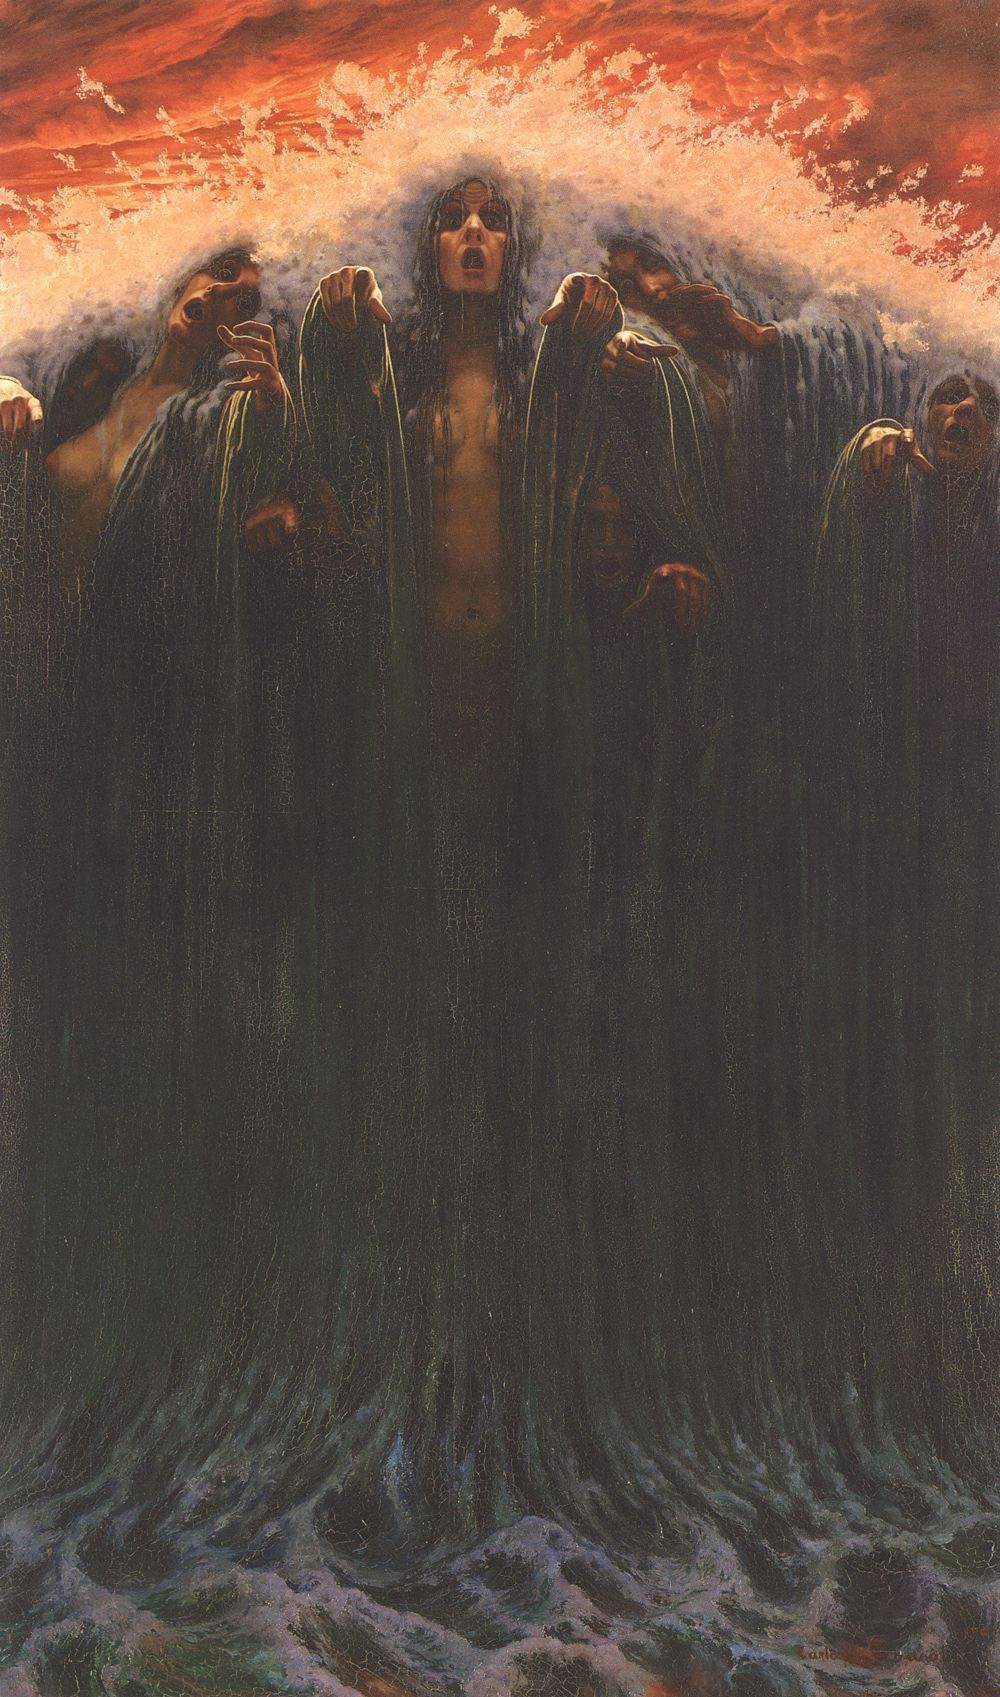 Carlos Schwabe, La Vague, 1907. Oil on canvas, 196 x 116 cm, Musée d'art et d'histoire, Geneve